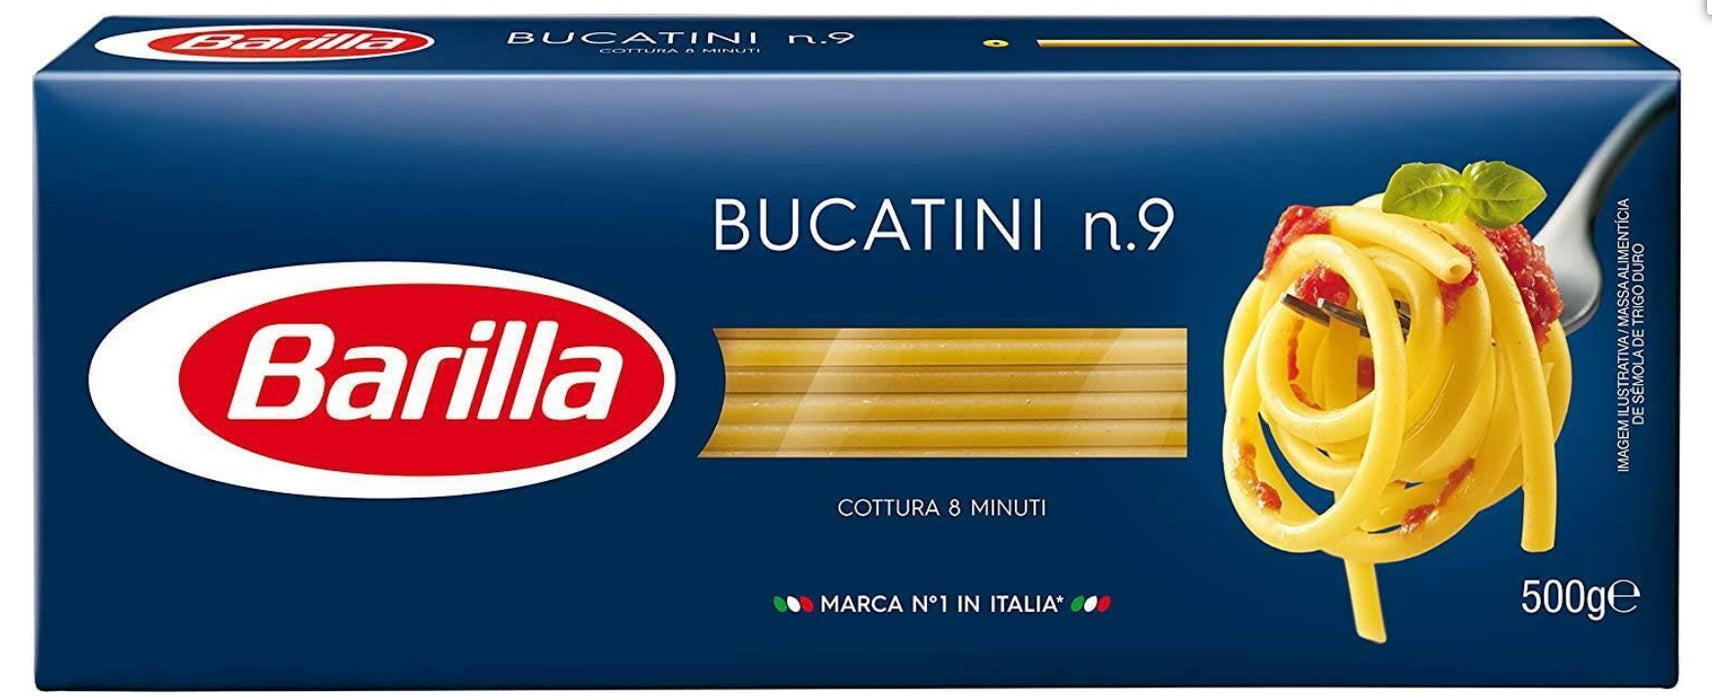 Barilla Bucatini Pasta Number 009 (Makarna) 500 Grams